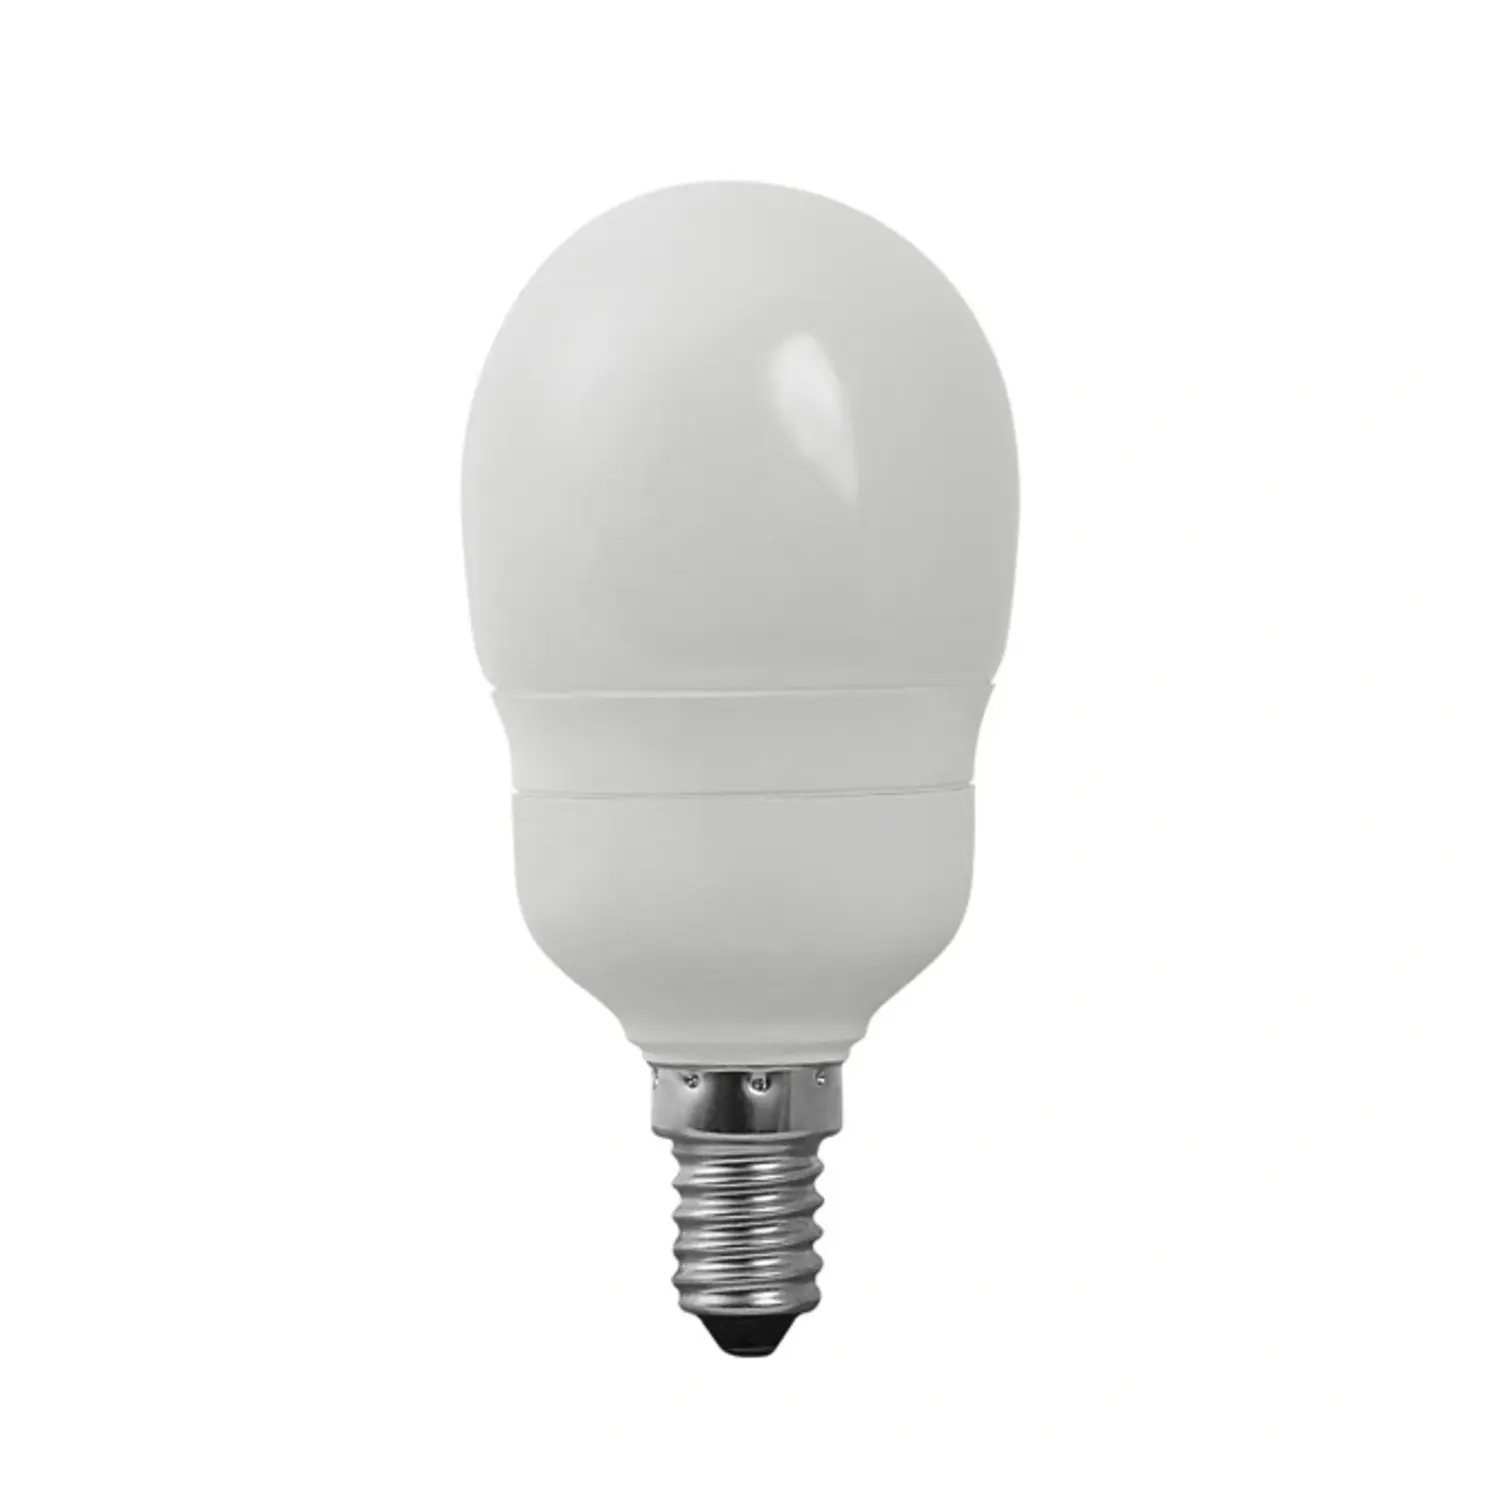 immagine del prodotto lampadina risparmo energetico globetto e14 9watt luce calda